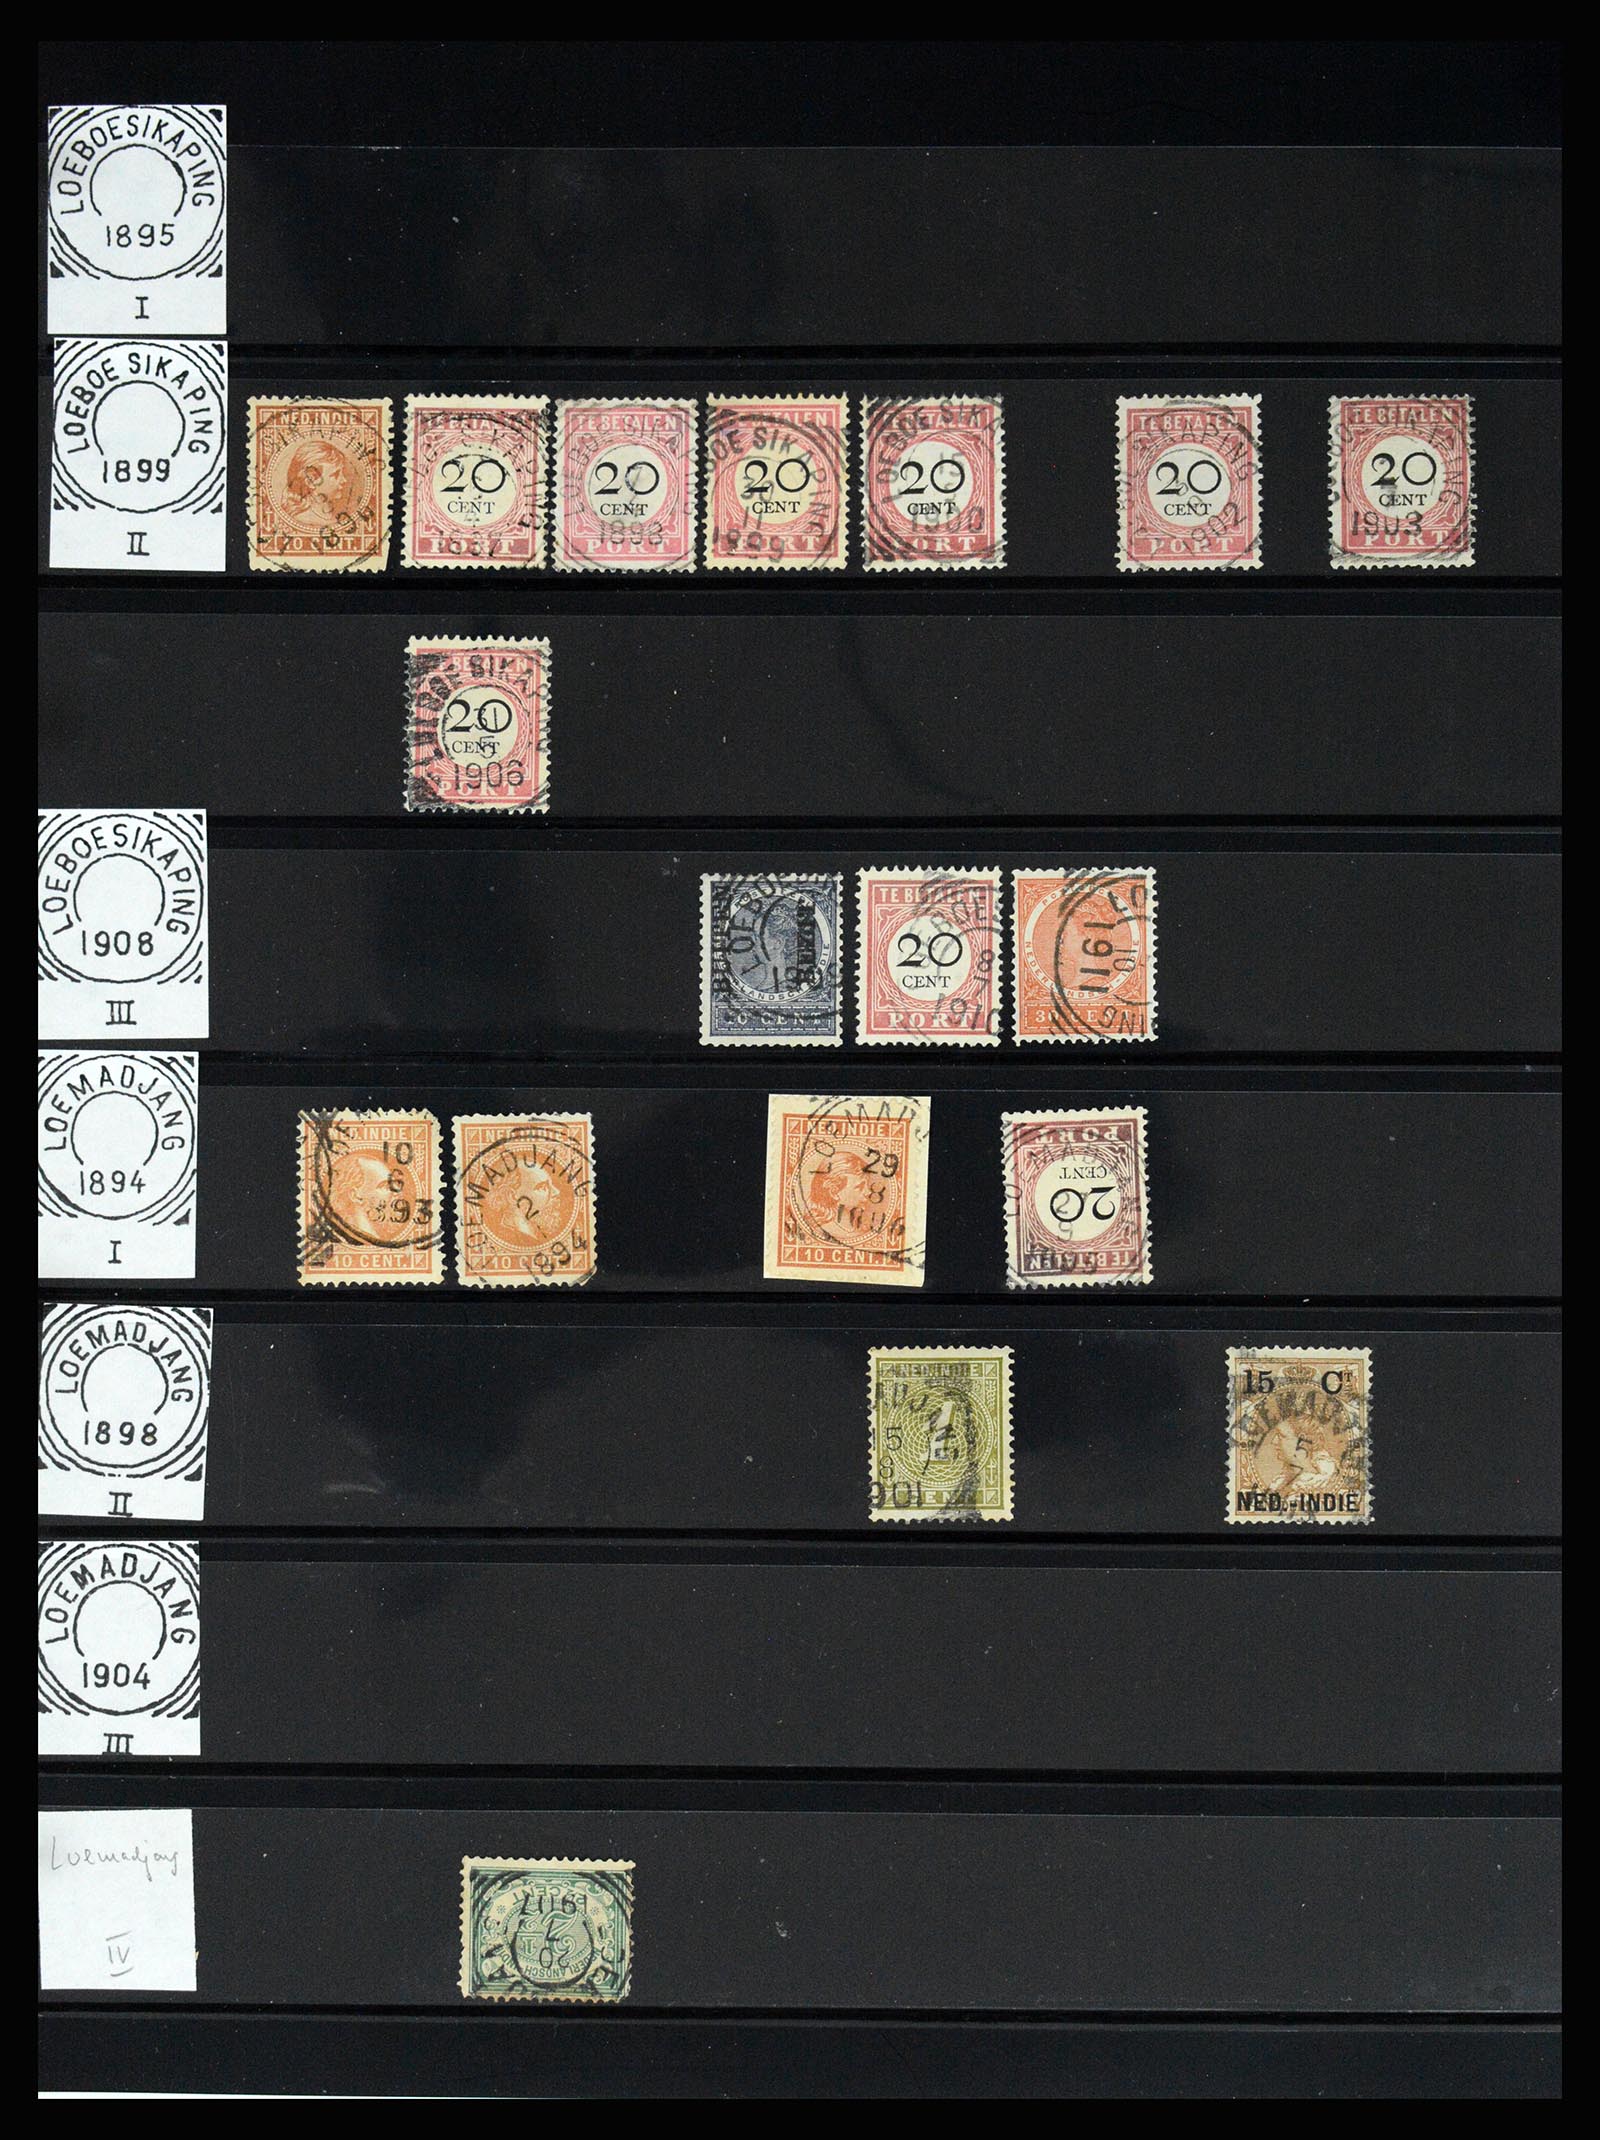 36512 127 - Stamp collection 36512 Nederlands Indië stempels 1872-1930.